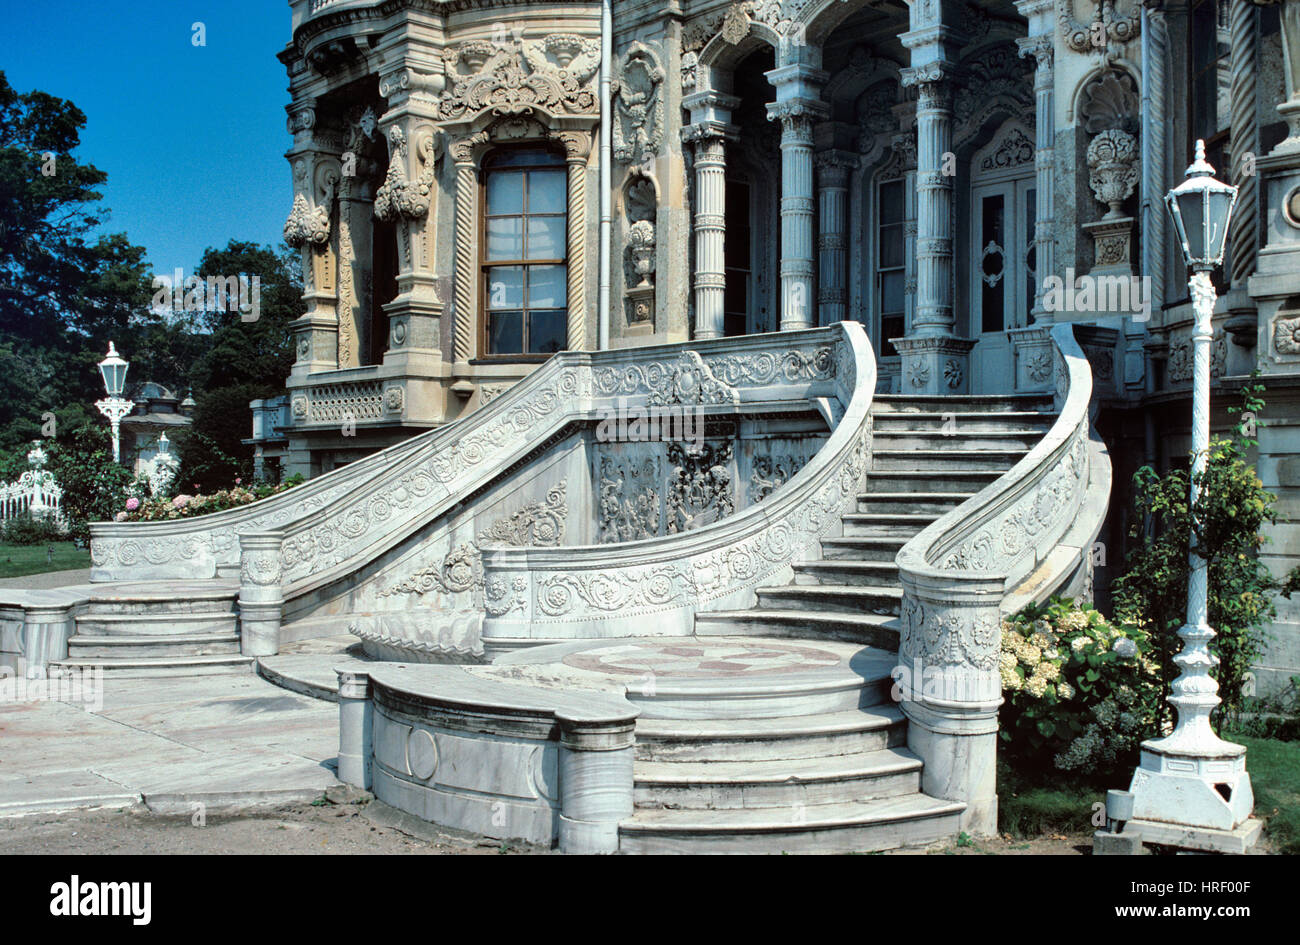 Reich verzierte barocke Marmortreppe oder Treppe in Barock Stil Kücüksu Palast oder Sommerpavillon am asiatischen Ufer des Bosporus oder Bosporus Meerenge-Istanbul-Türkei Stockfoto